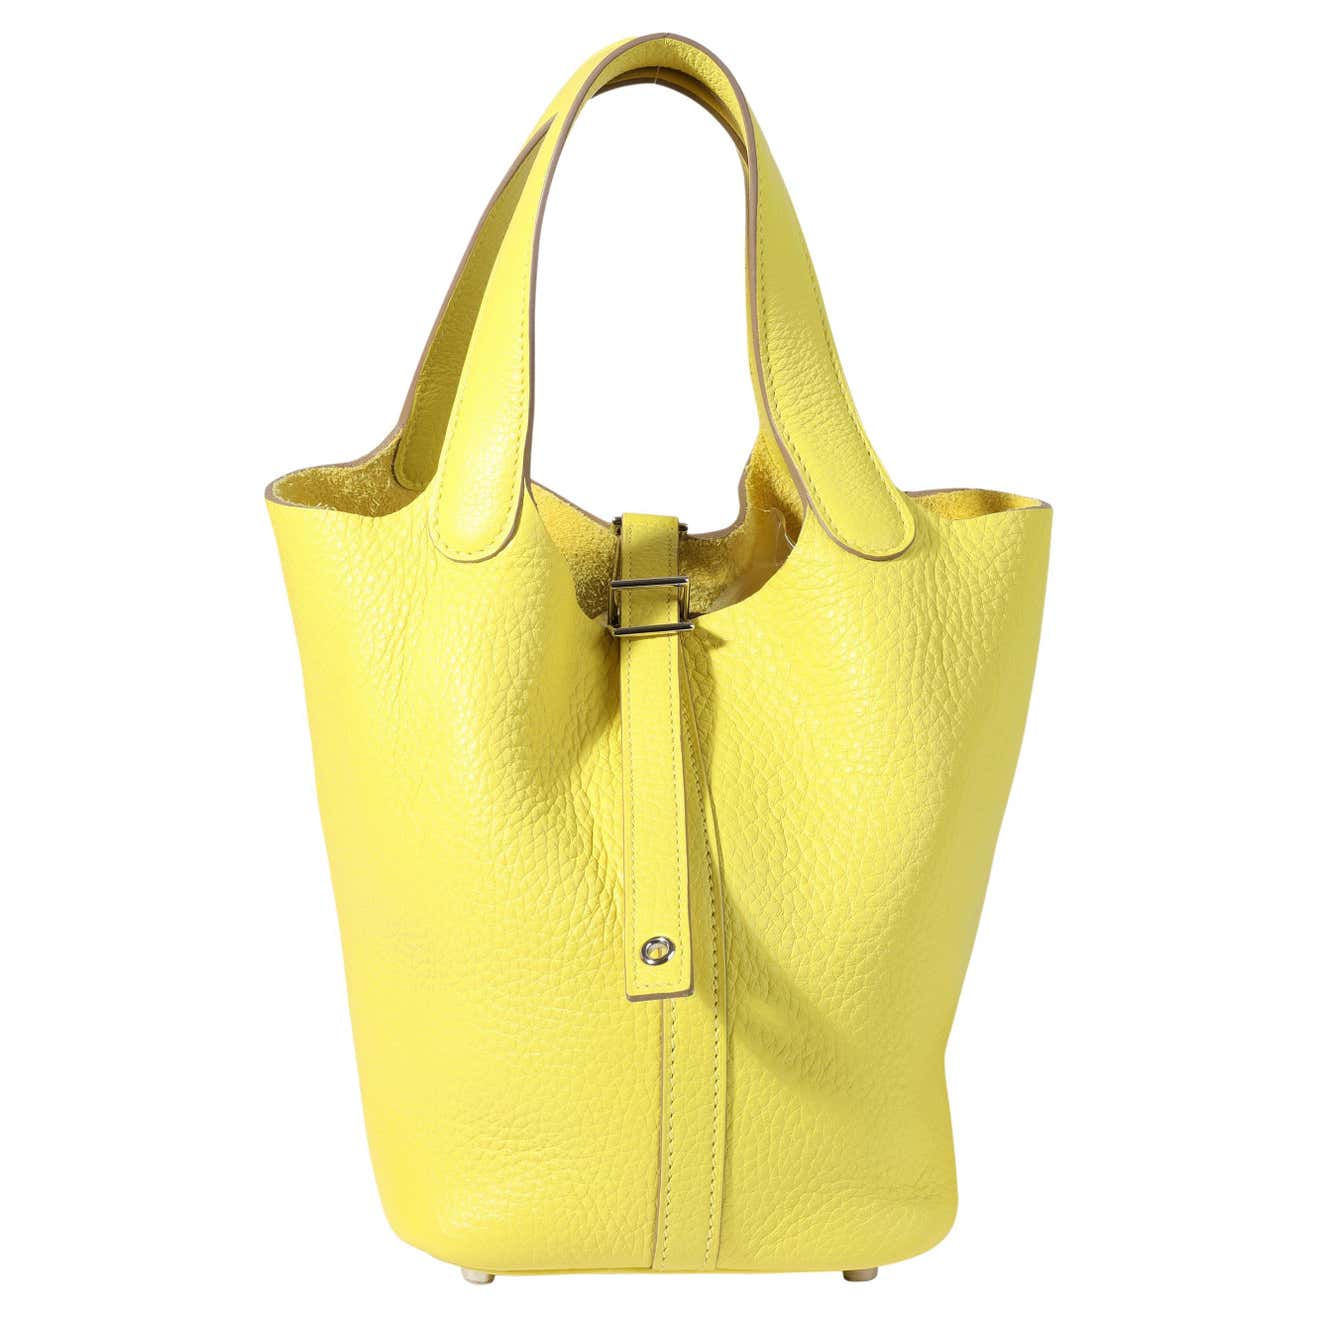 Hermes Birkin Bag #accessories, #style, #bag, Birkin, and hermes  #GetTheLook